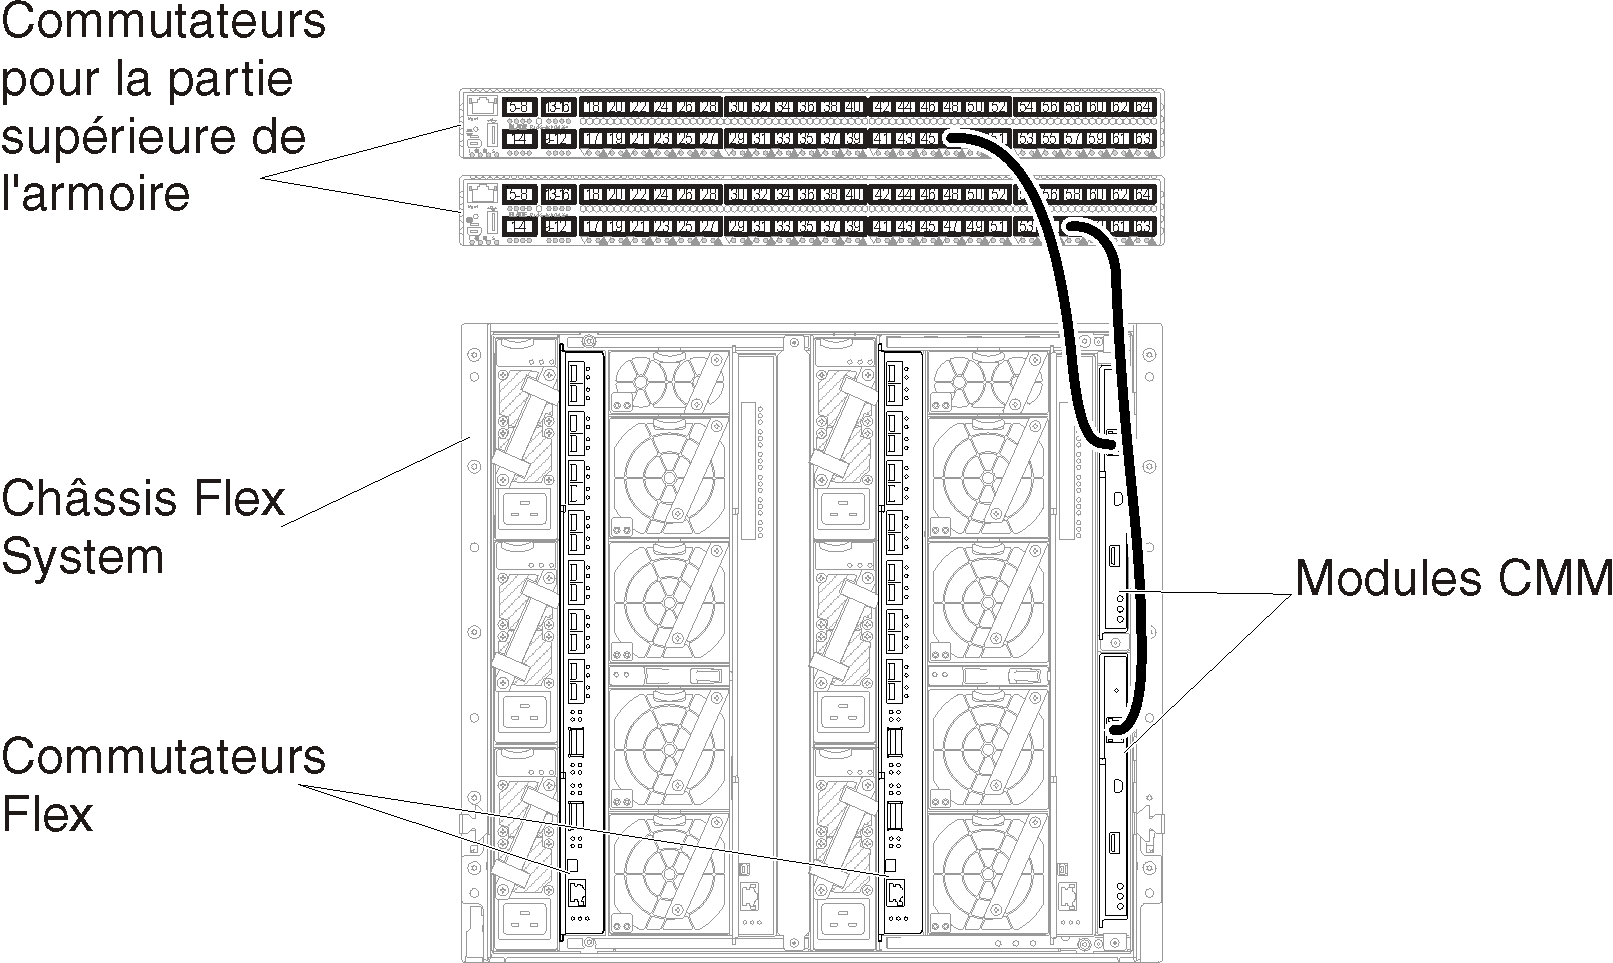 Illustre le câblage des modules CMM sur les commutateurs de la partie supérieure de l'armoire